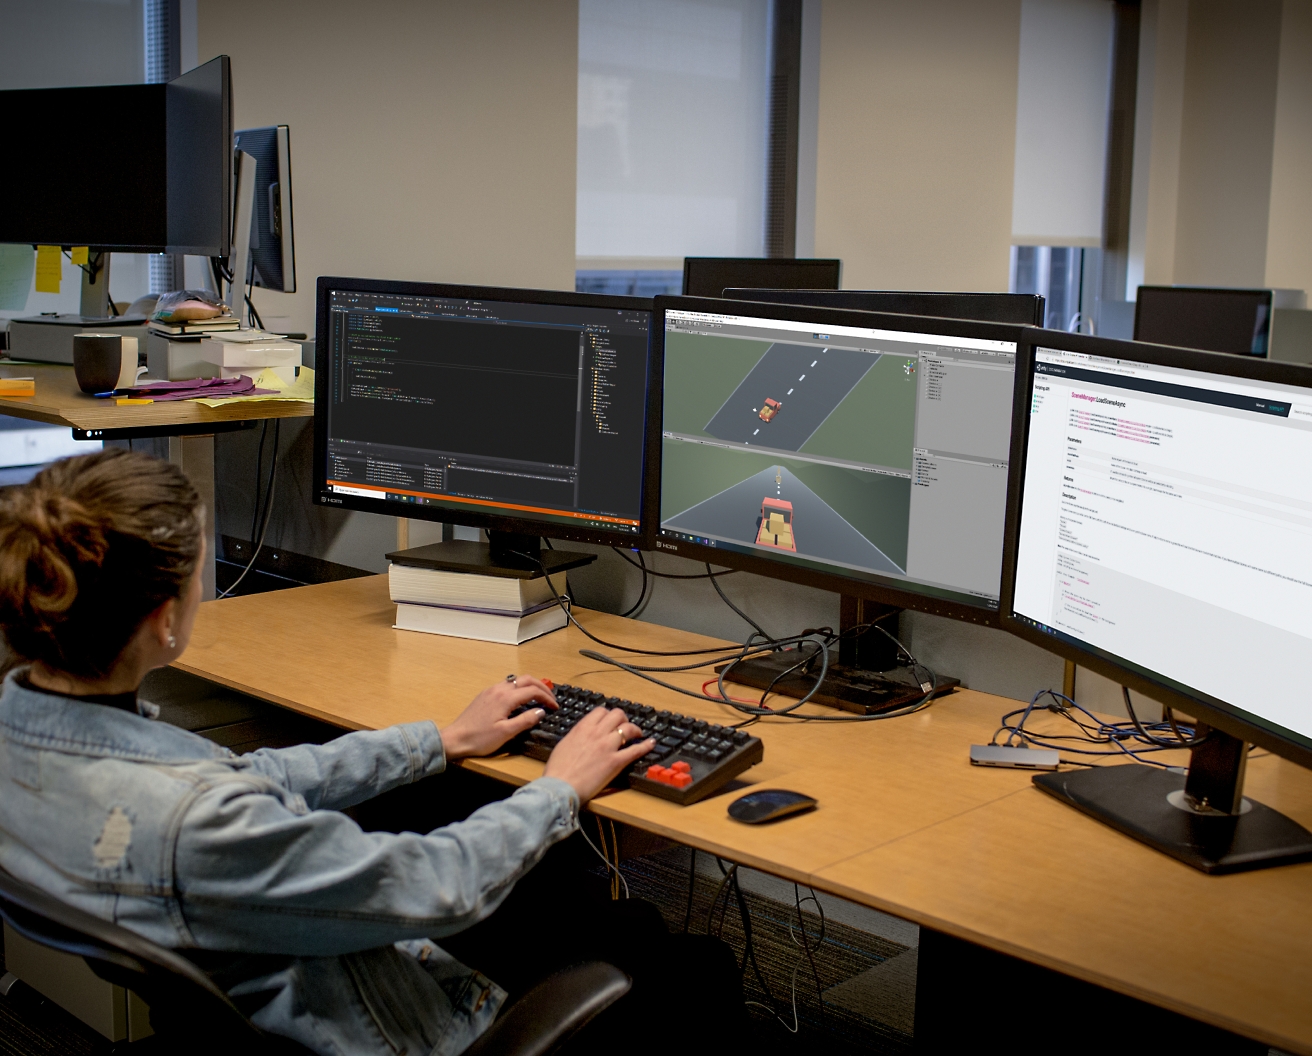 Una sviluppatrice di software che lavora con una postazione con più monitor in un ufficio e scrive codice ed esegue il debug di software.